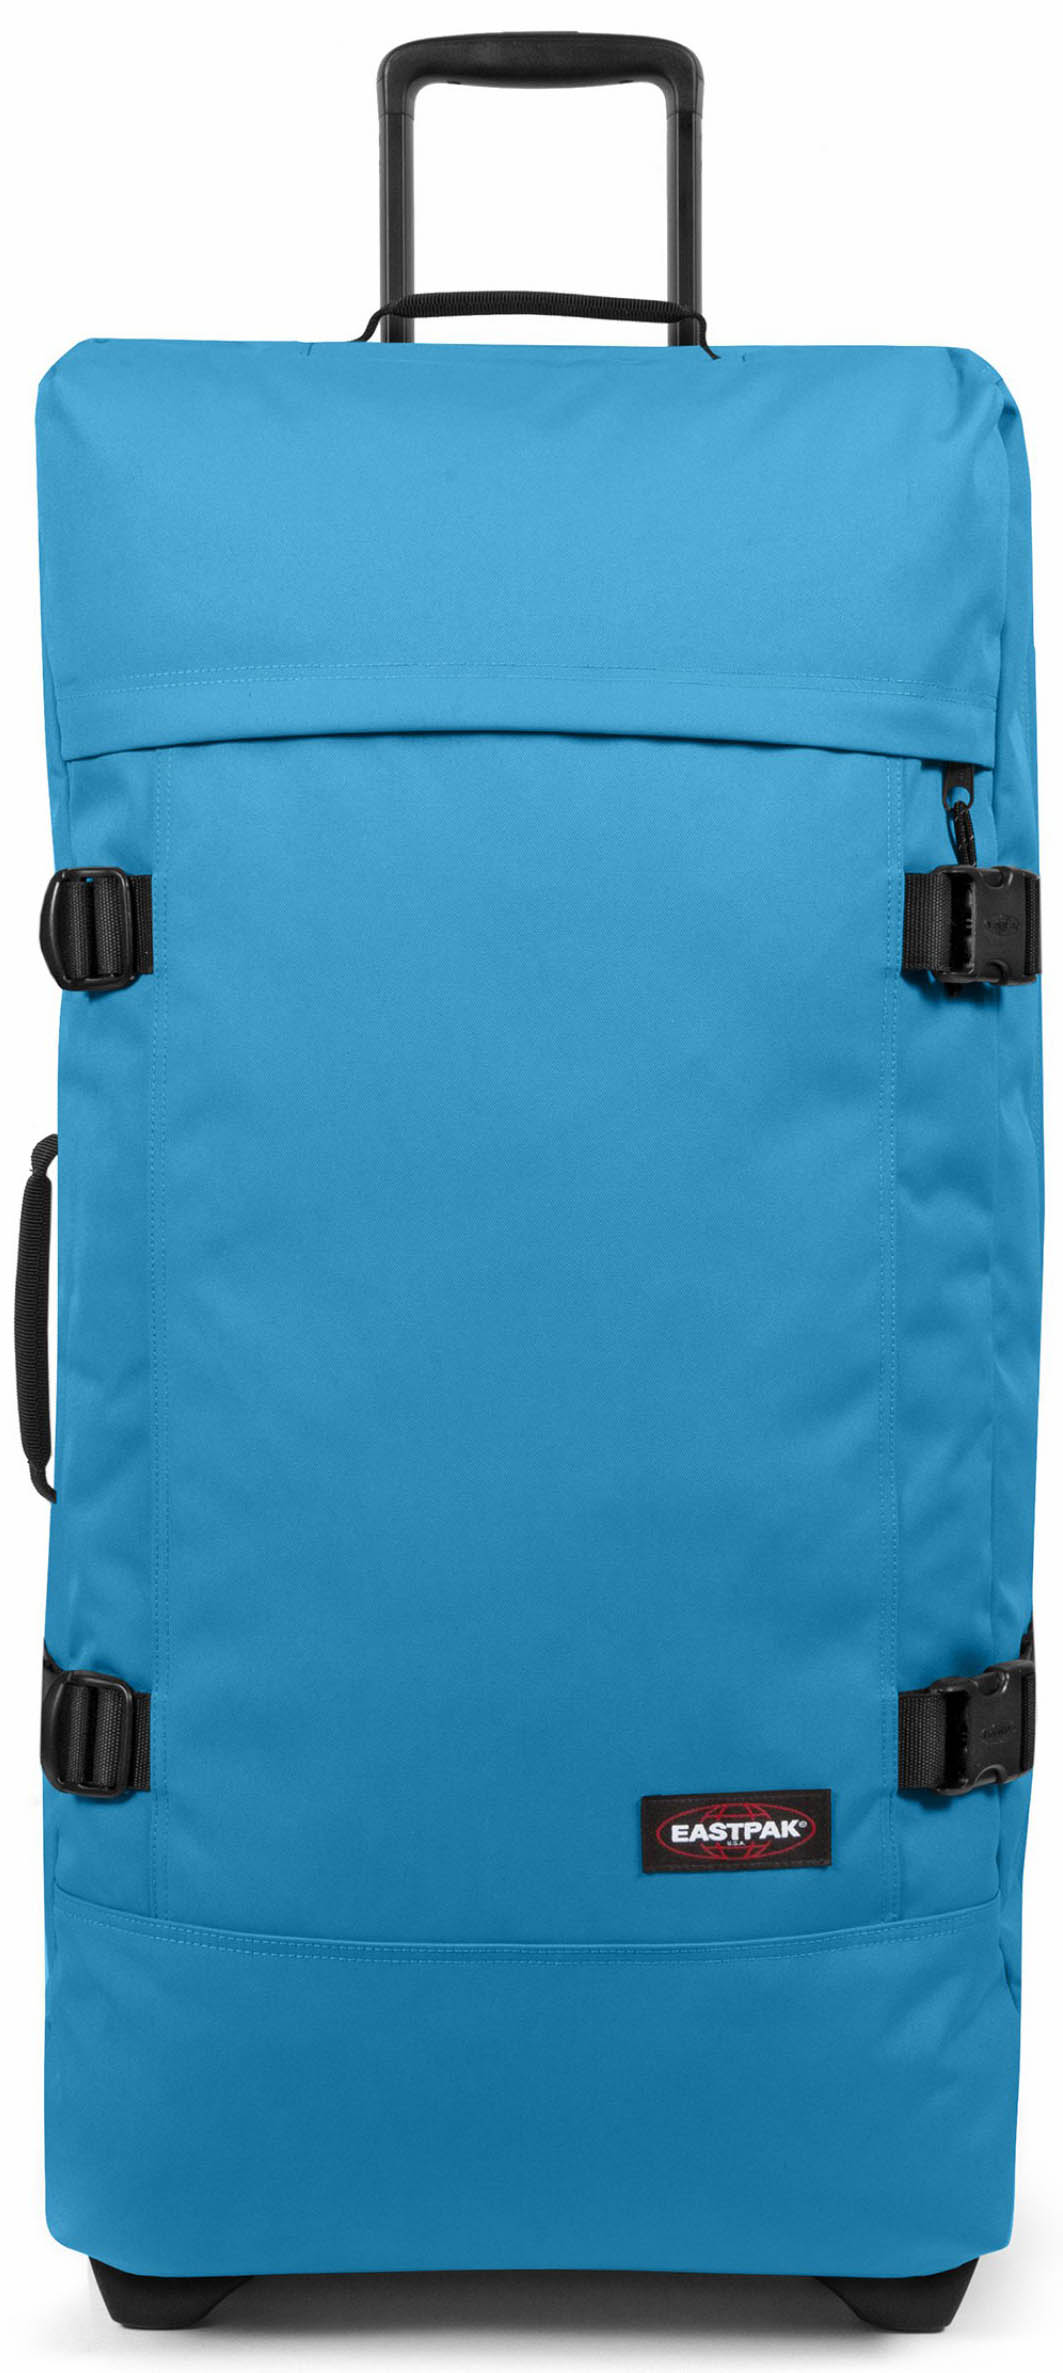 Eastpak Tranverz L Suitcase - Broad – thebackpacker